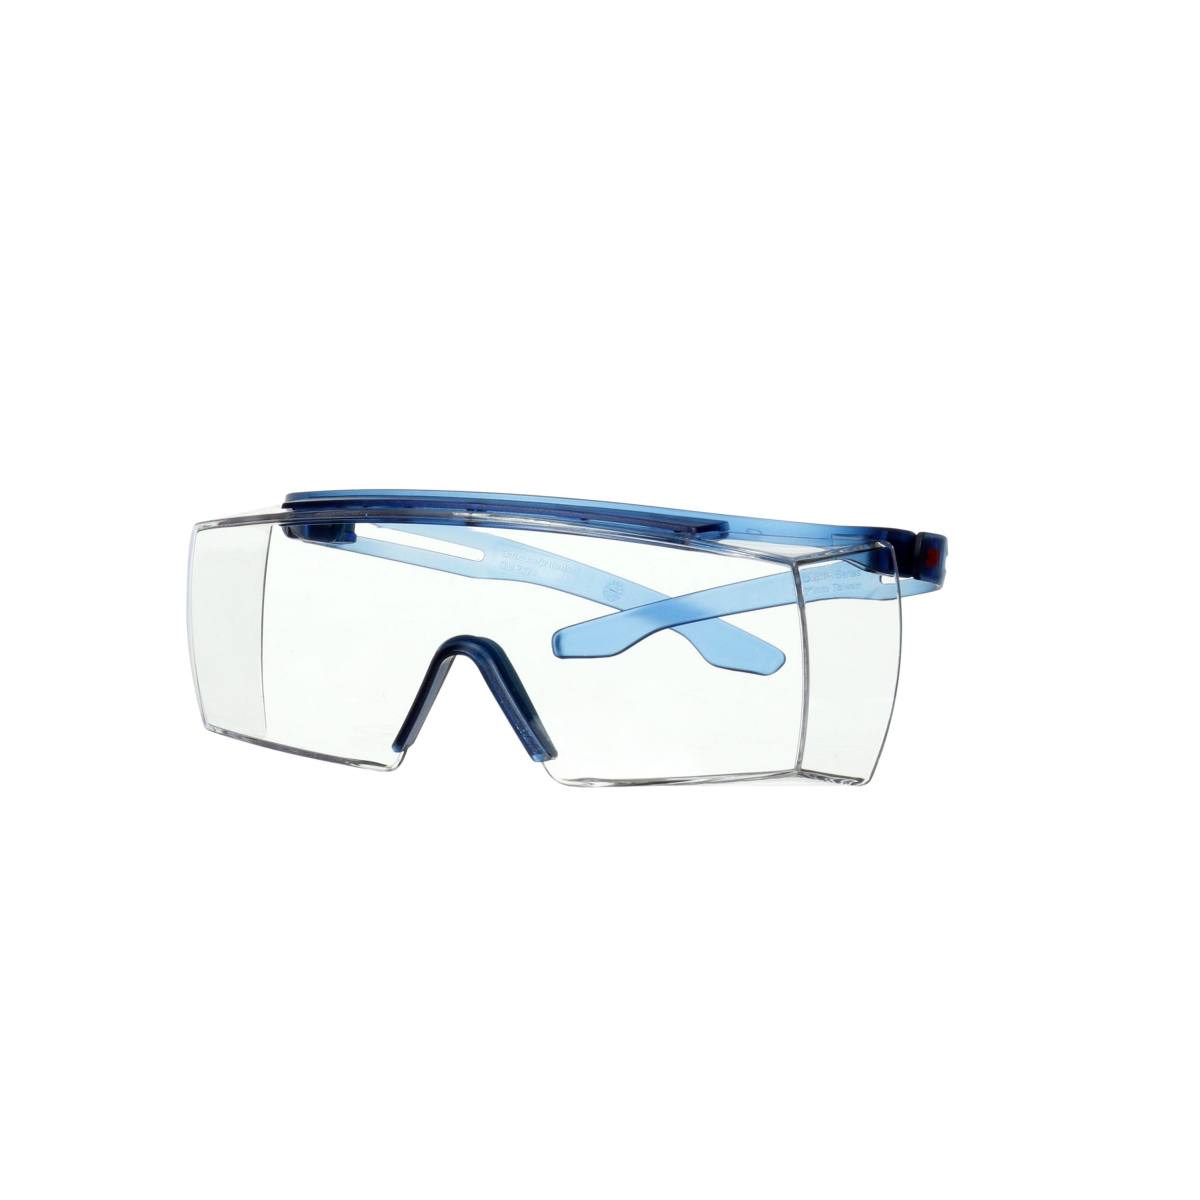 3M SecureFit 3700 sur-lunettes, branches bleues, anti-rayures+ (K), écran transparent, angle réglable, SF3701ASP-BLU-EU